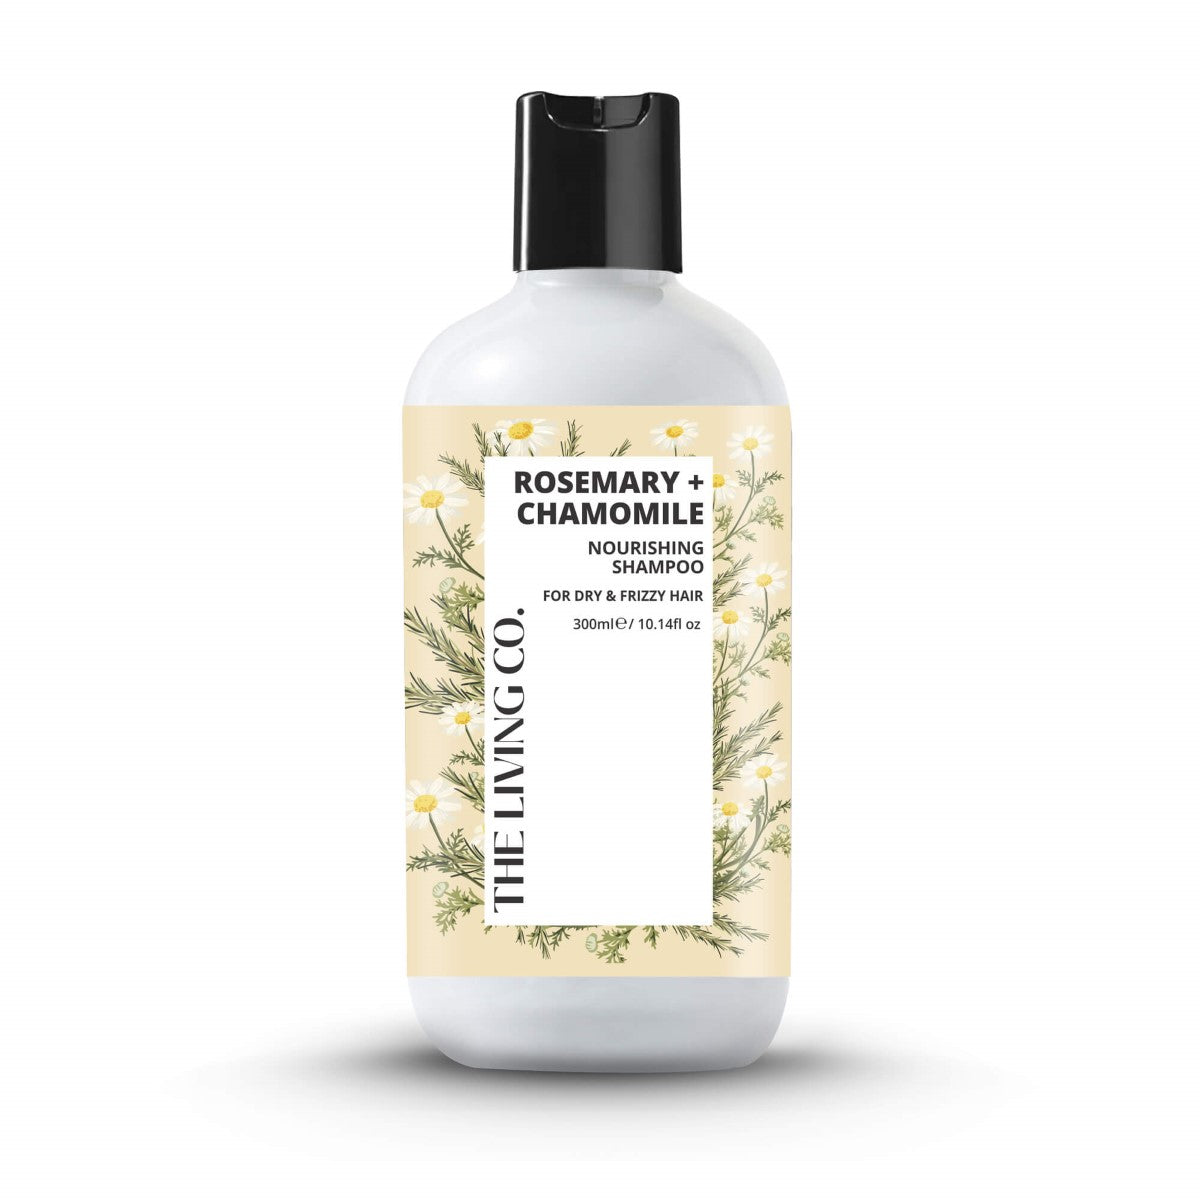 Nourishing Shampoo With Rosemary + Chamomile